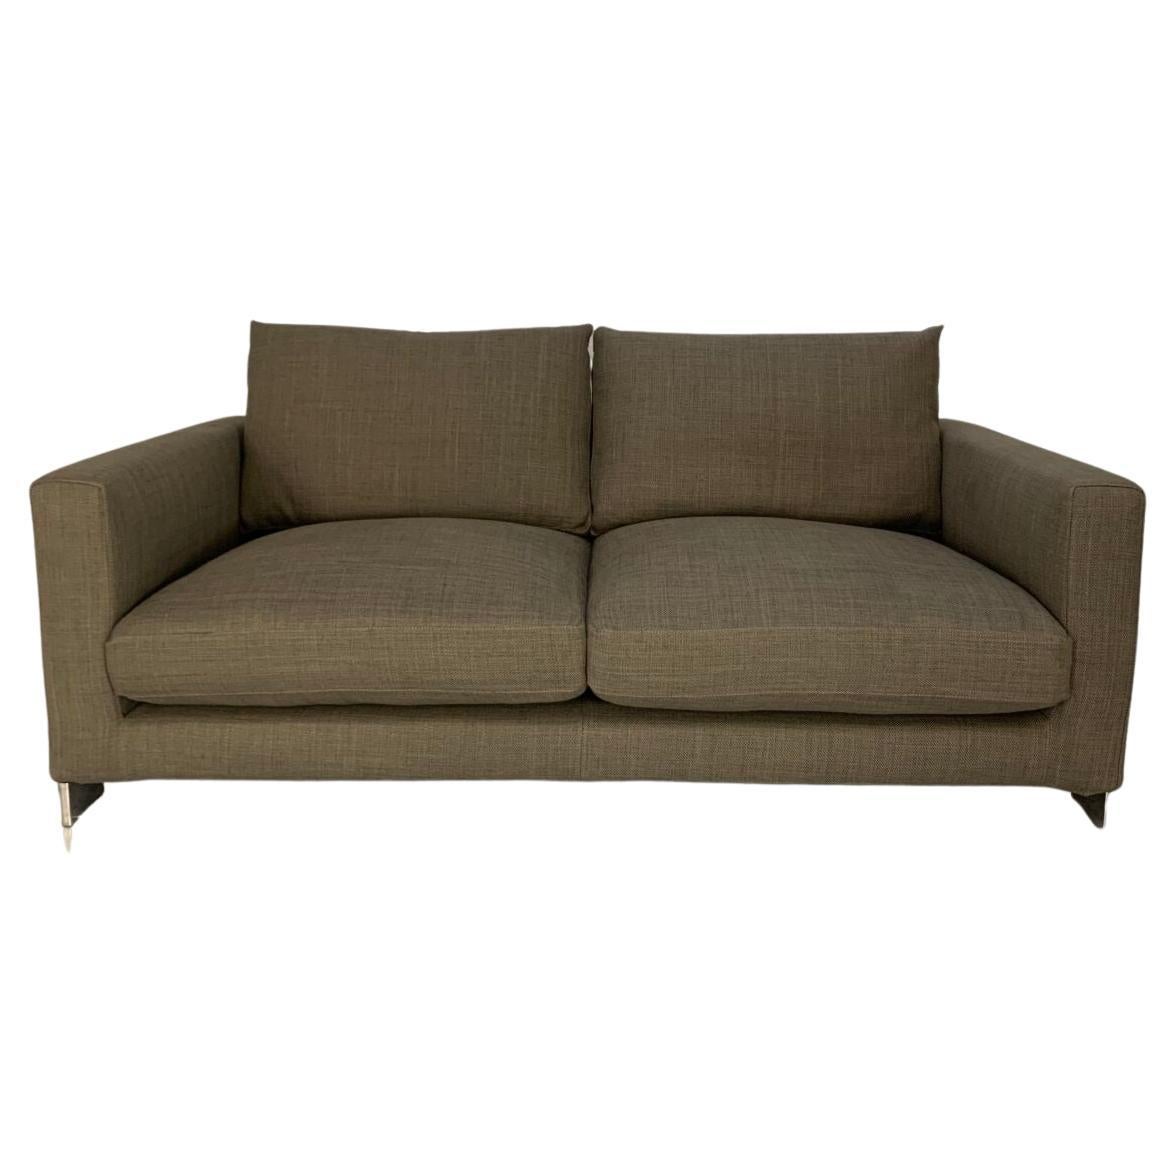 Molteni & C "Reversi" 2-Seat Sofa - In Woven Linen For Sale